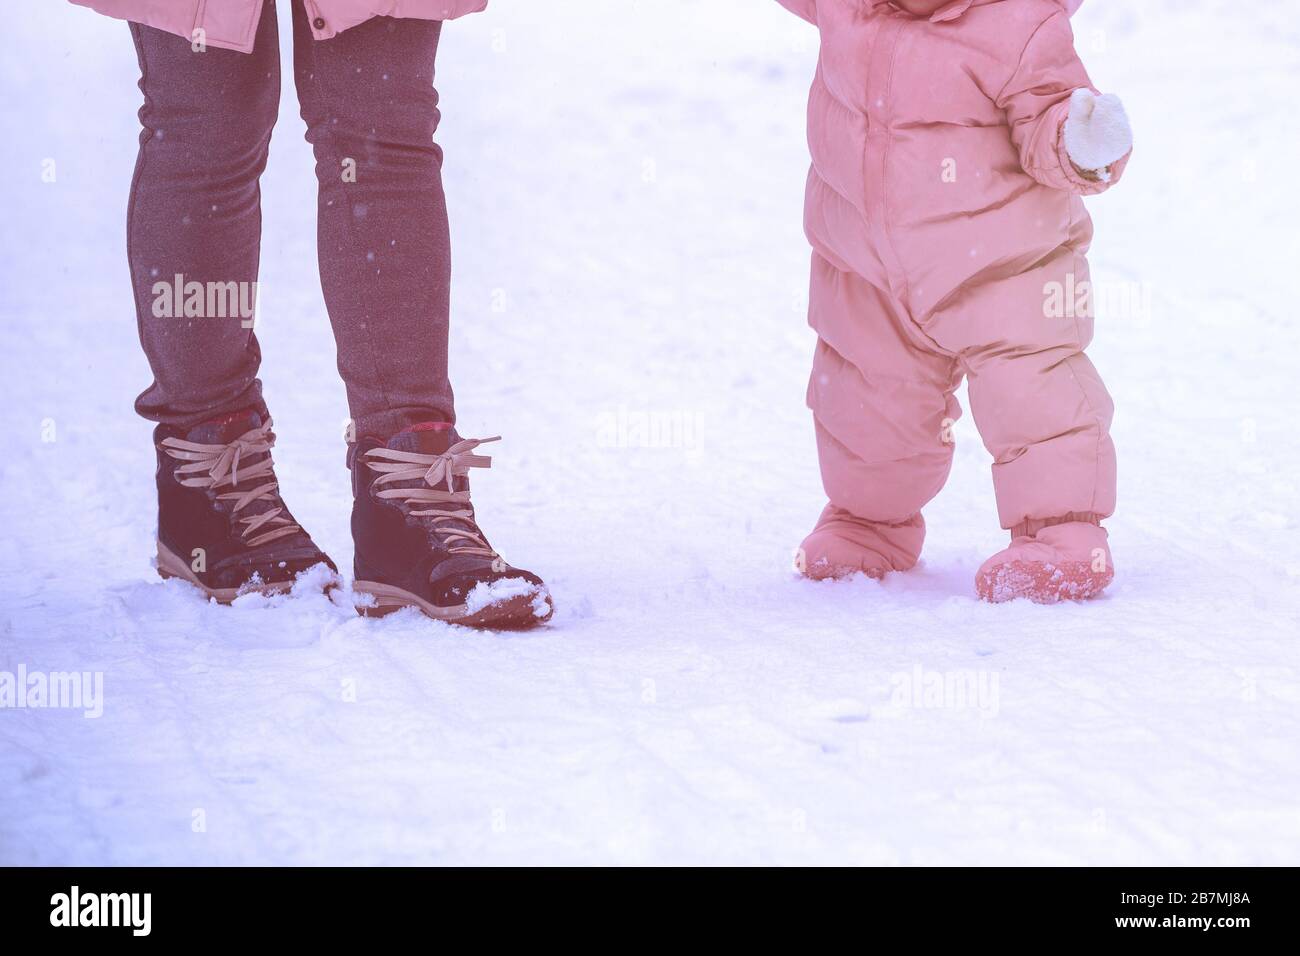 Premières étapes. La maman tient le bébé à la main. Maman et petite fille marchent dans la neige en hiver. L'enfant prend ses premiers pas à l'extérieur dans la neige Banque D'Images